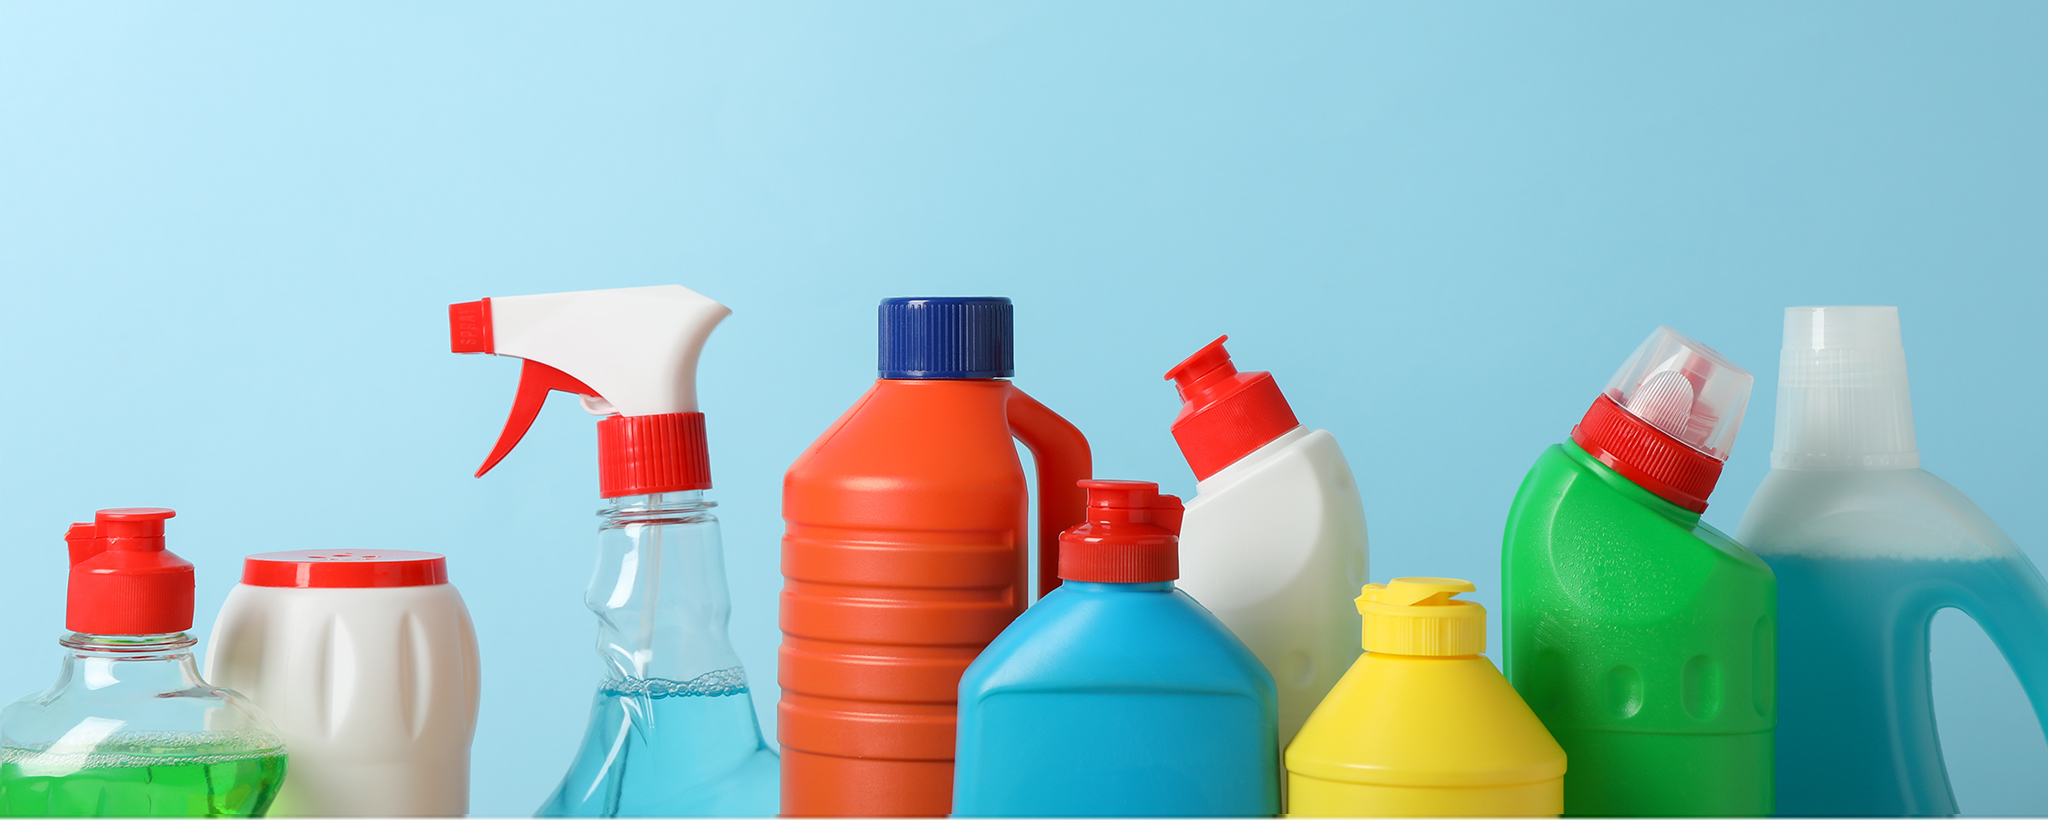 Cómo almacenar los productos de limpieza de forma segura - Mejor con Salud